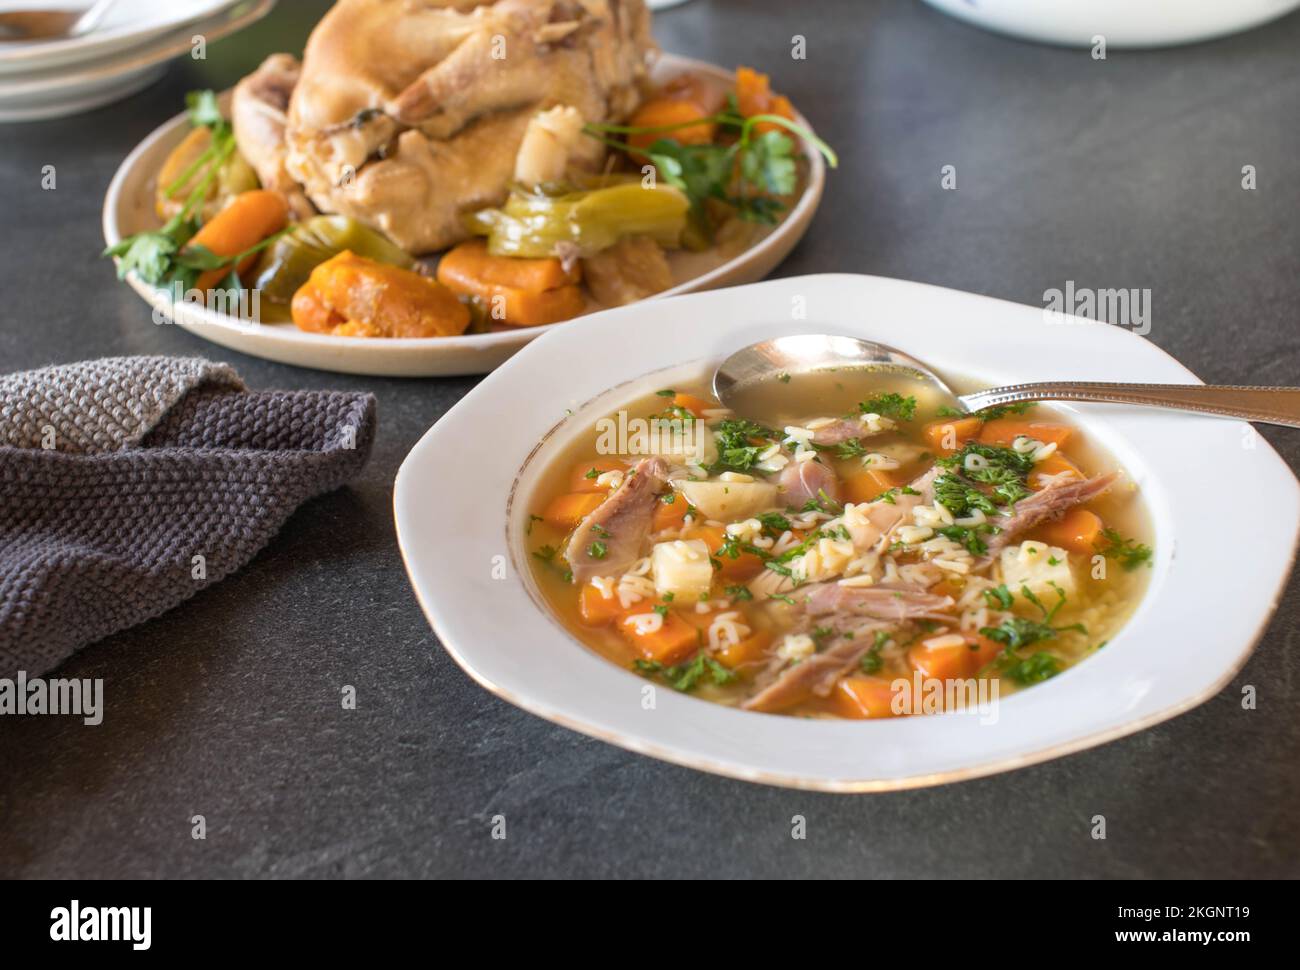 Piatto con zuppa di spaghetti di pollo appena cucinata cucinata con pasta all'alfabeto sul tavolo da cucina Foto Stock